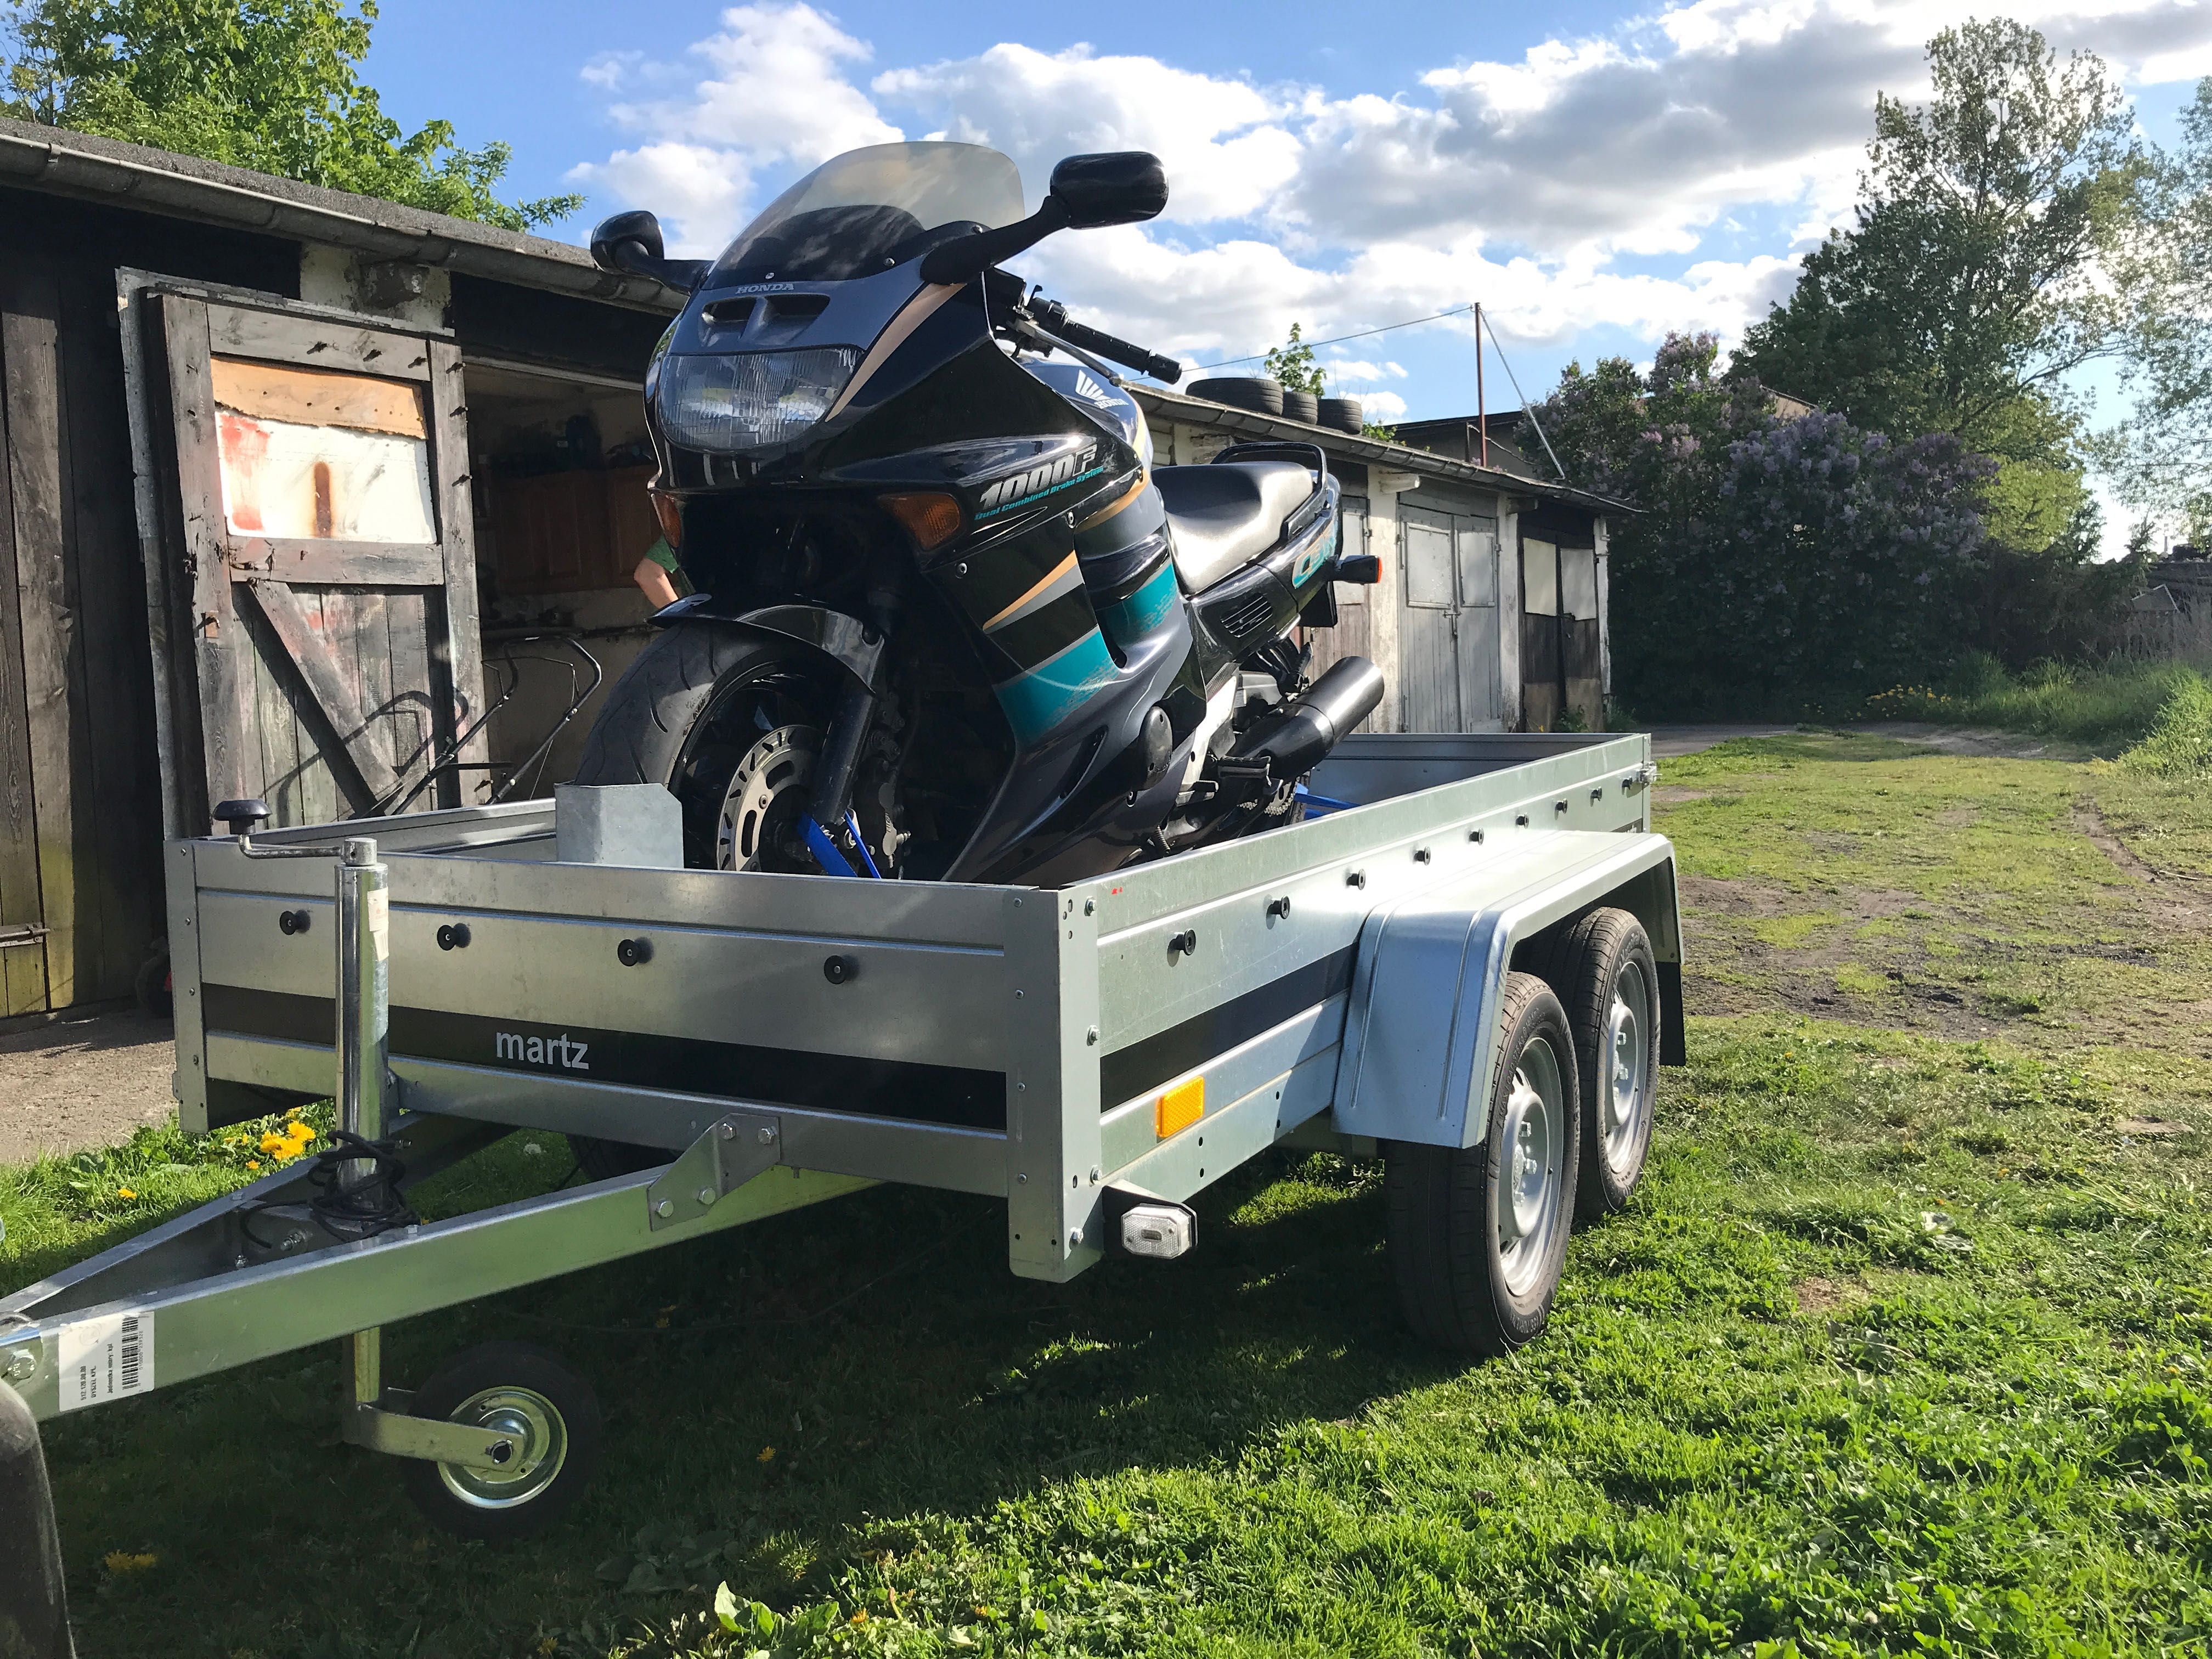 Transport motocykli - doradztwo w zakupie motocykla